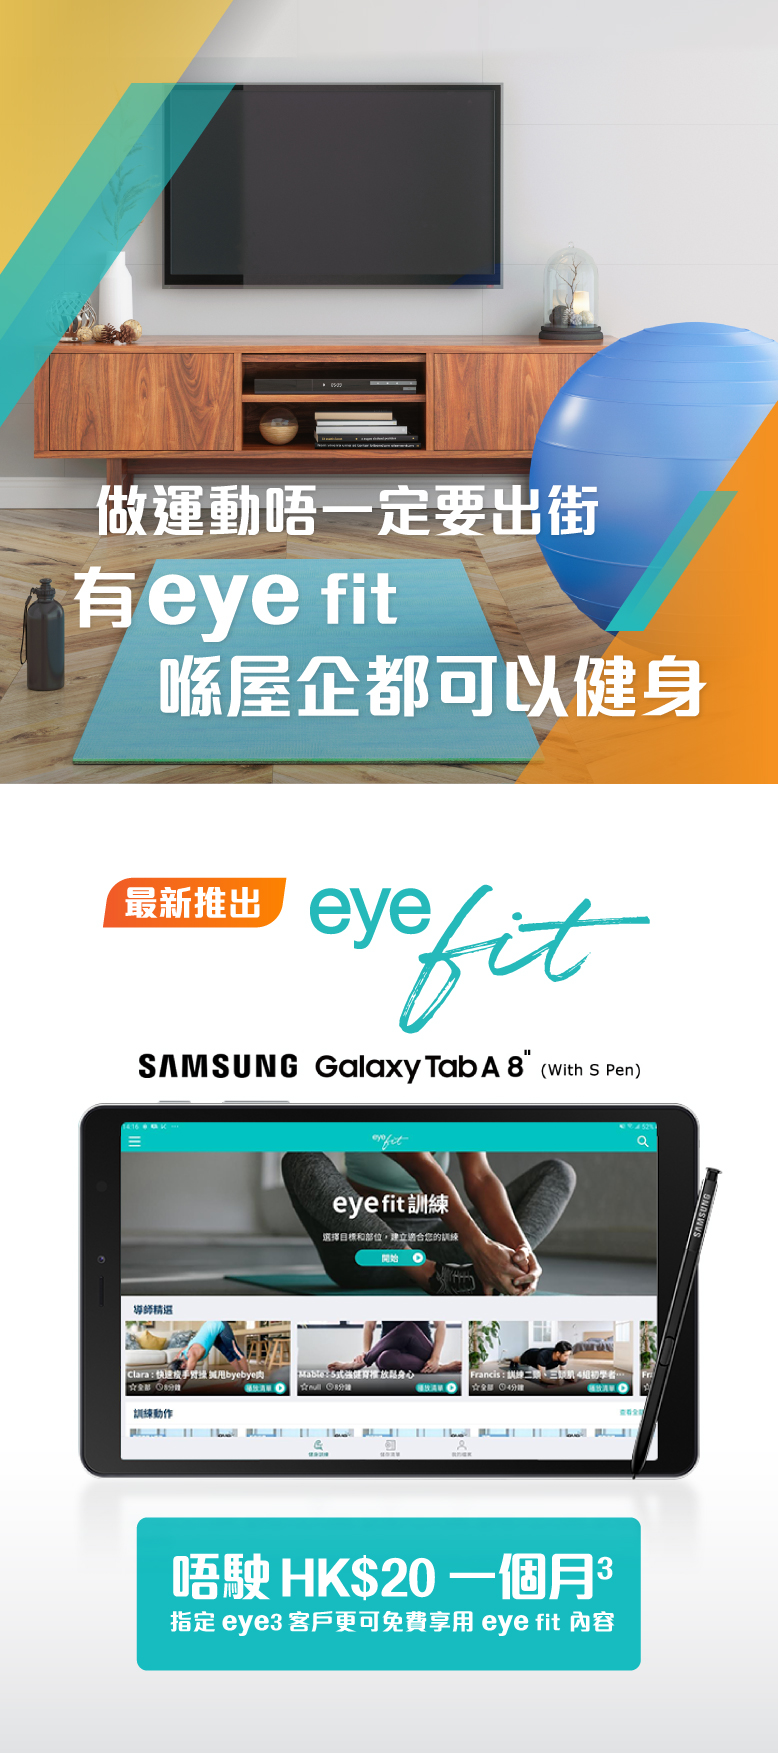 最新堆出 eyefit 唔駛HK$20一個月 指定eye3客戶更可免費享用eyefit內容